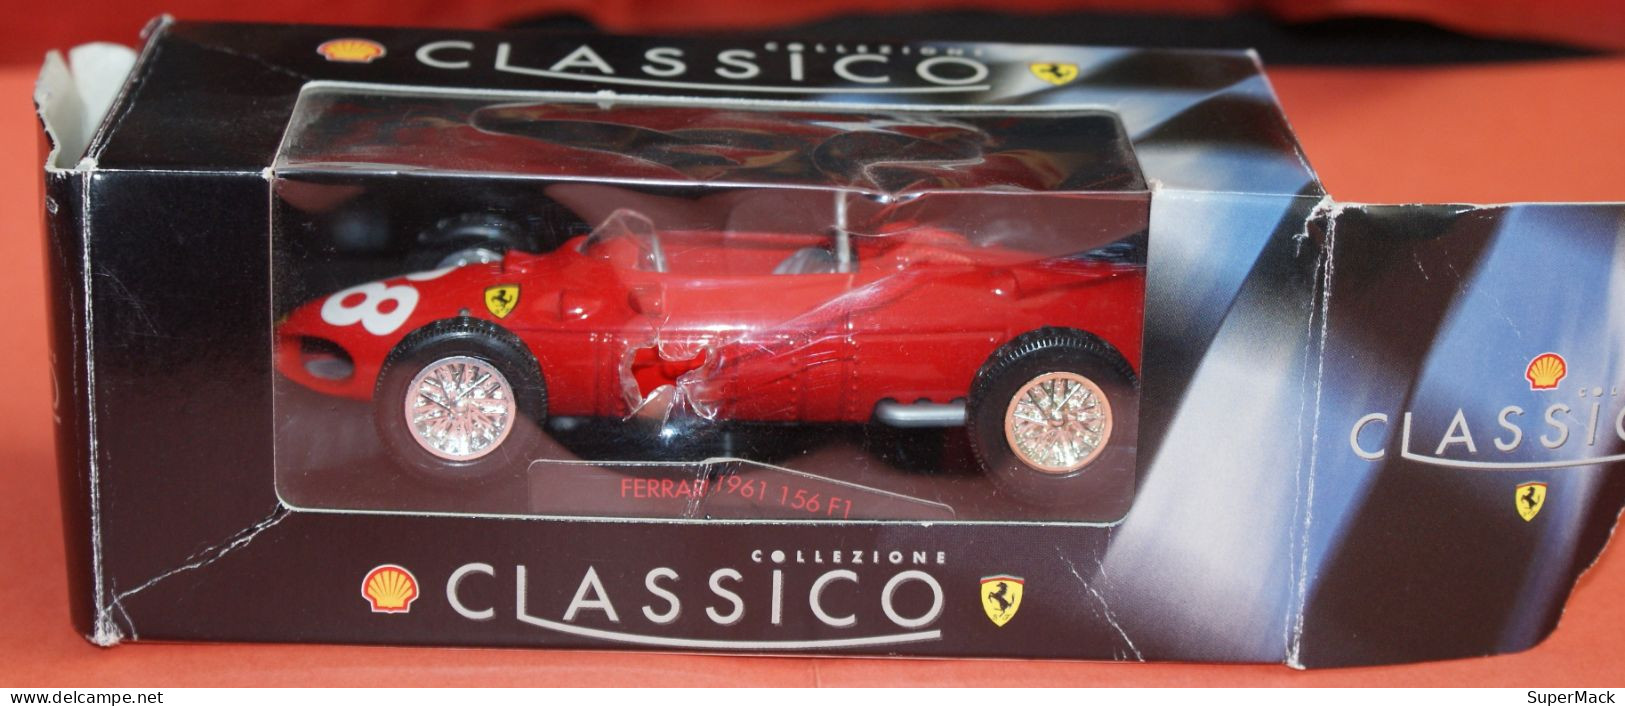 SHELL Classico Collezione - Ferrari 1961 156 F1 - Echelle 1:35 ### NEUVE ### - Echelle 1:32